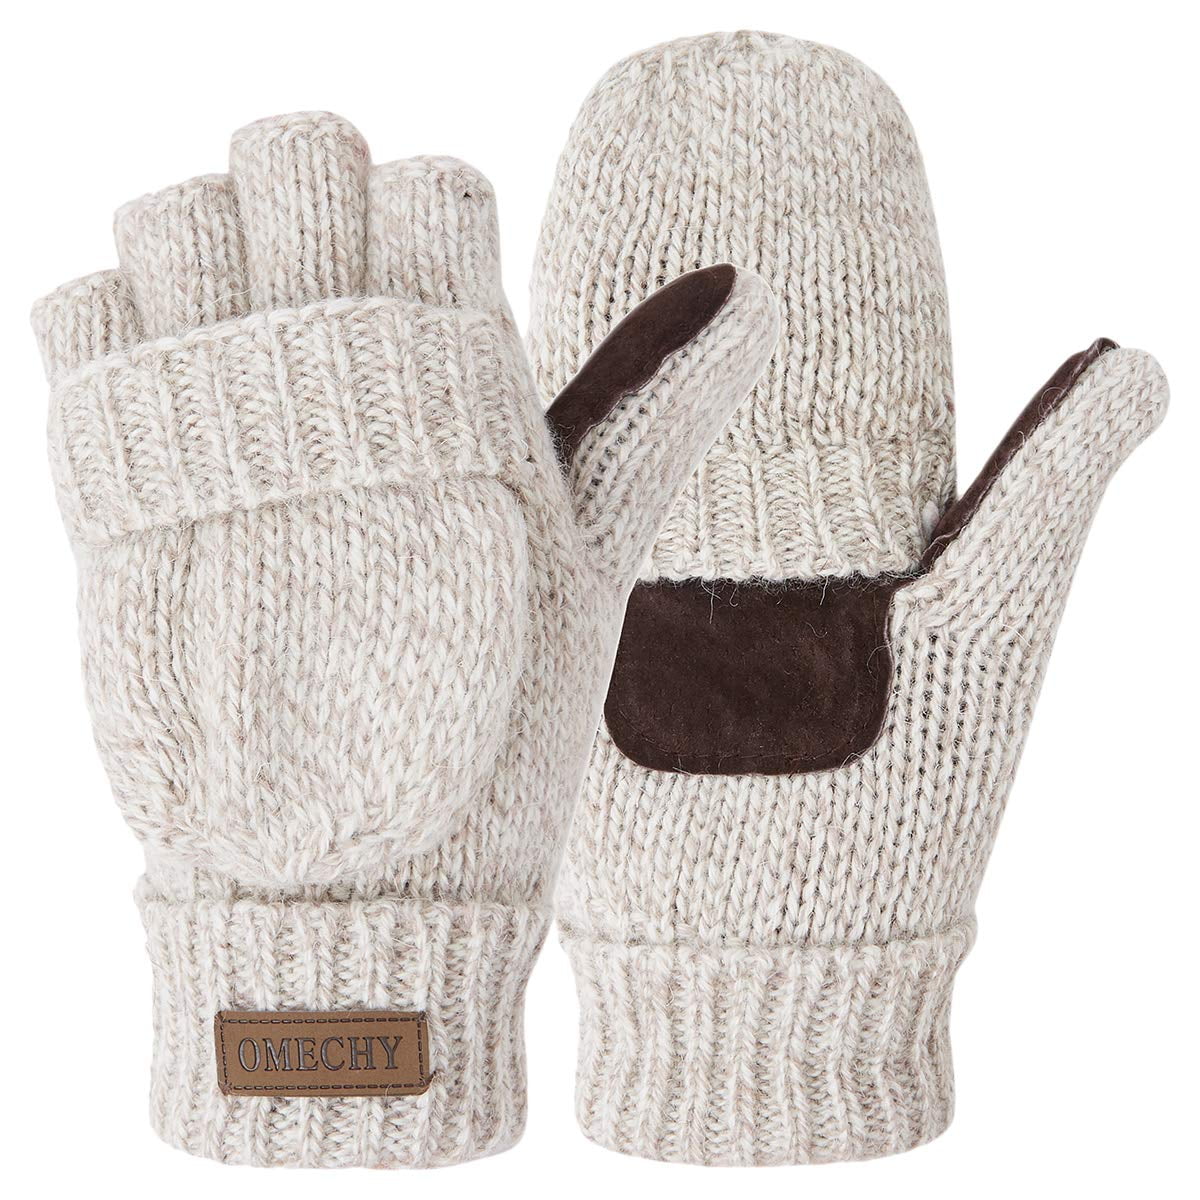 COOPLUS Mittens Winter Fingerless Gloves Warm Wool Algeria